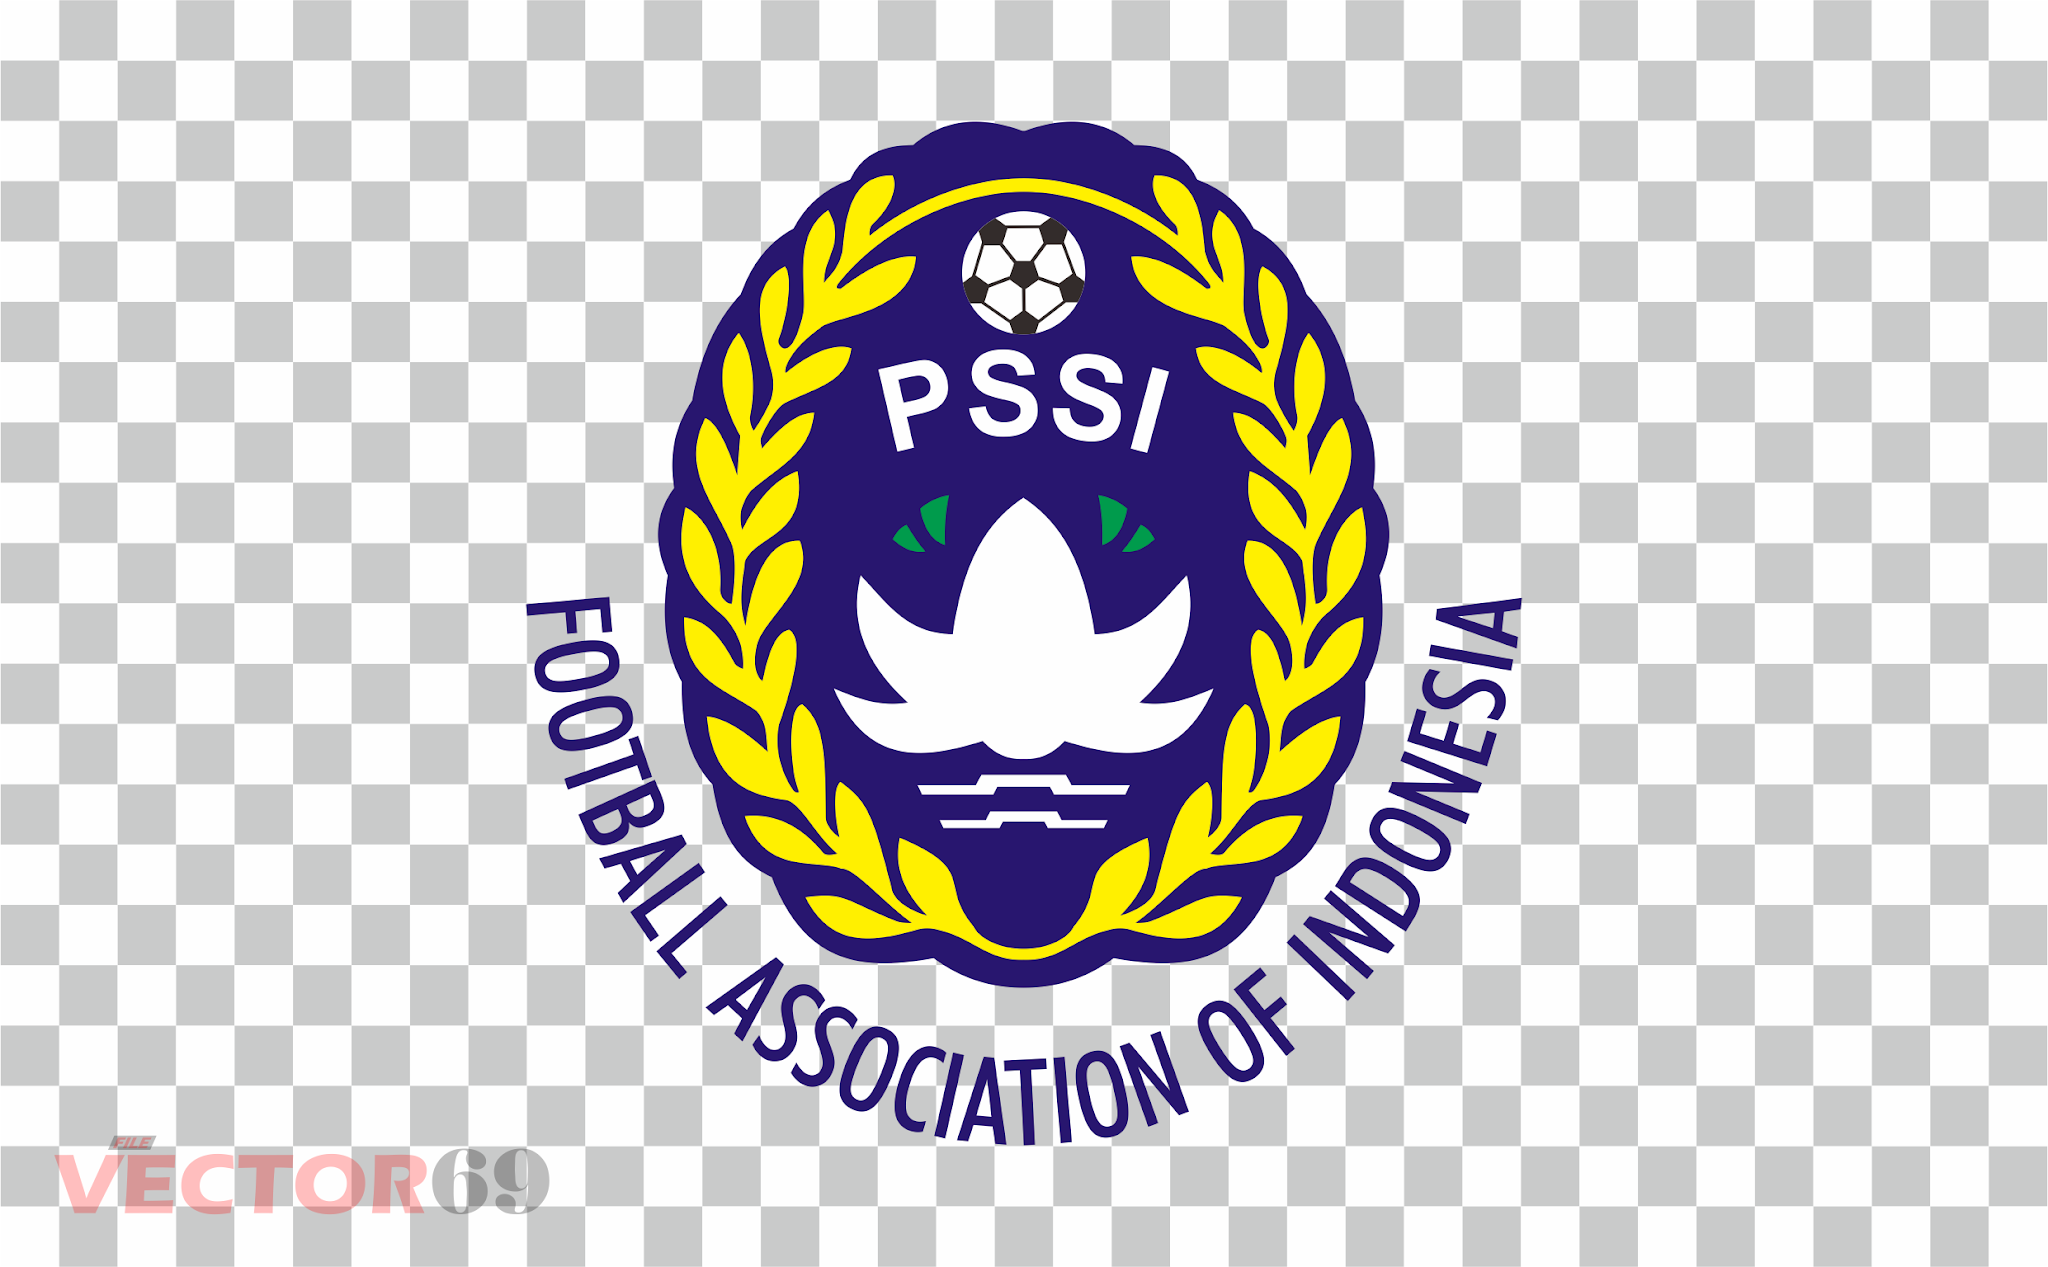 PSSI (Persatuan Sepakbola Seluruh Indonesia) Logo - Download Vector File PNG (Portable Network Graphics)